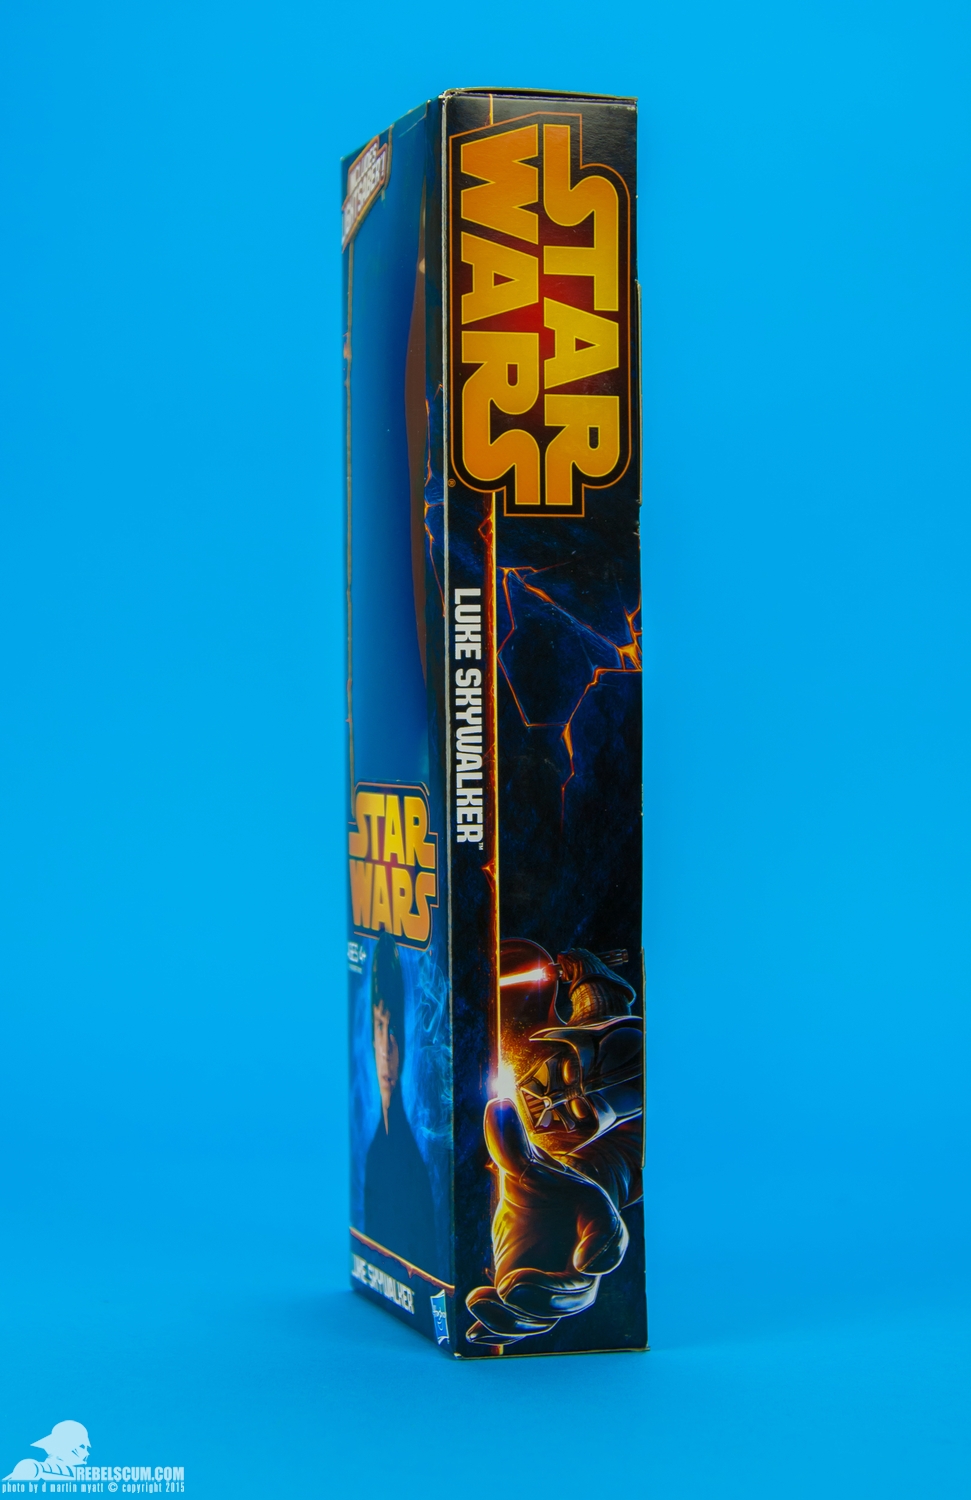 Luke-Skywalker-2014-Star-Wars-12-Inch-Figure-009.jpg